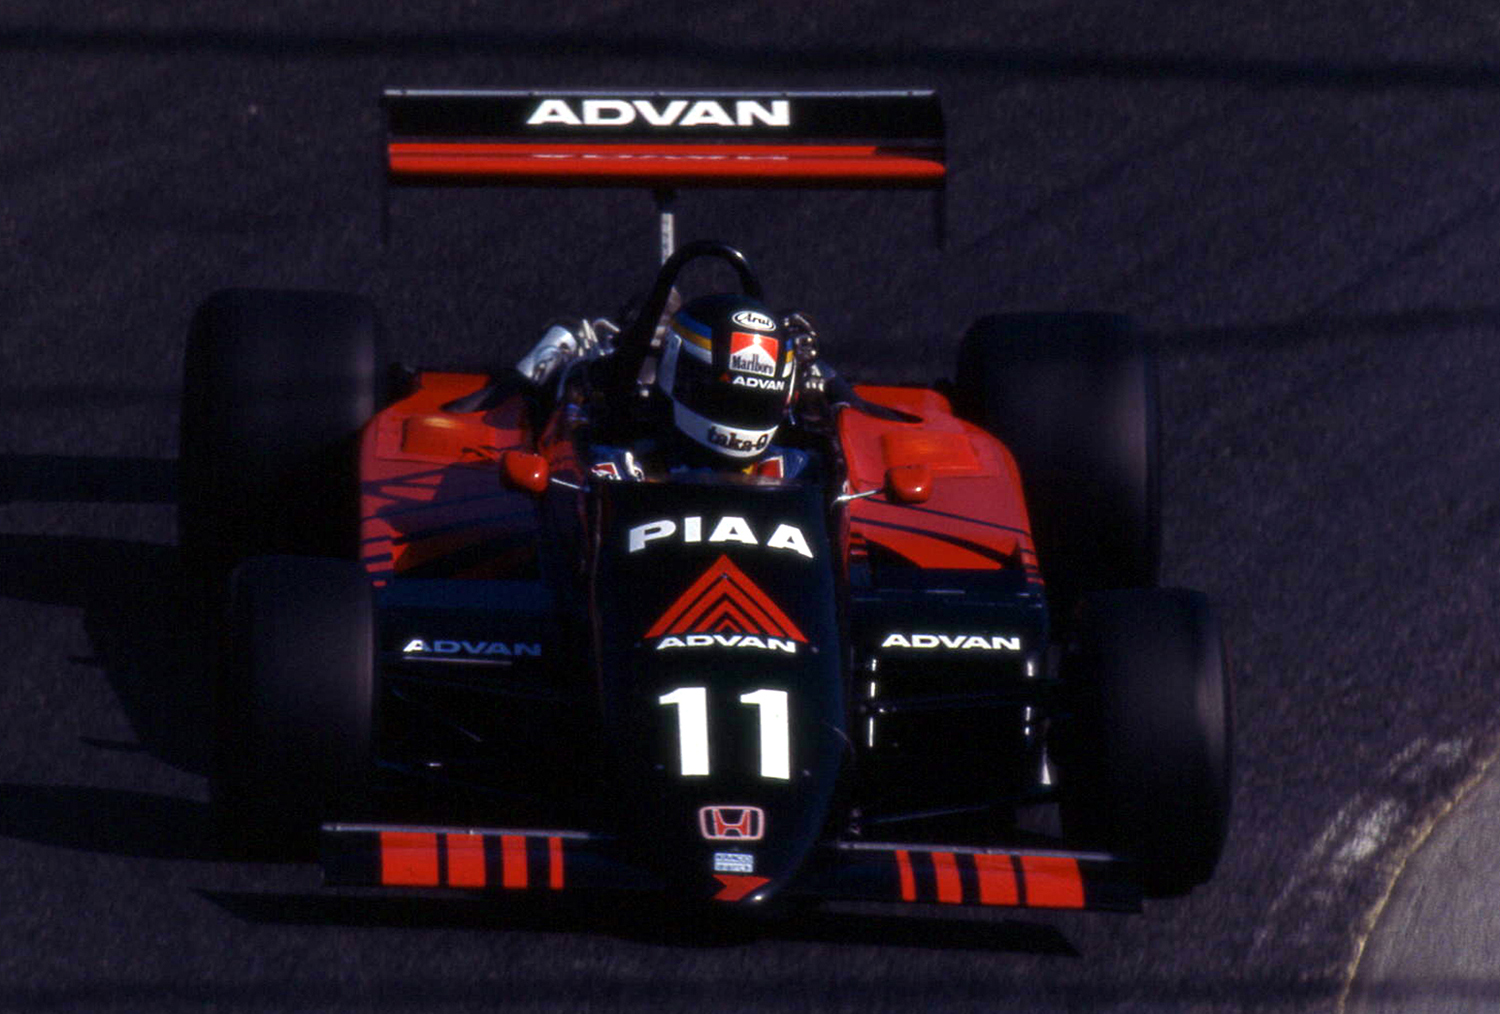 その速さとカラーリングに憧れた印象深い「ADVAN」カラーのレースマシン 〜 画像9